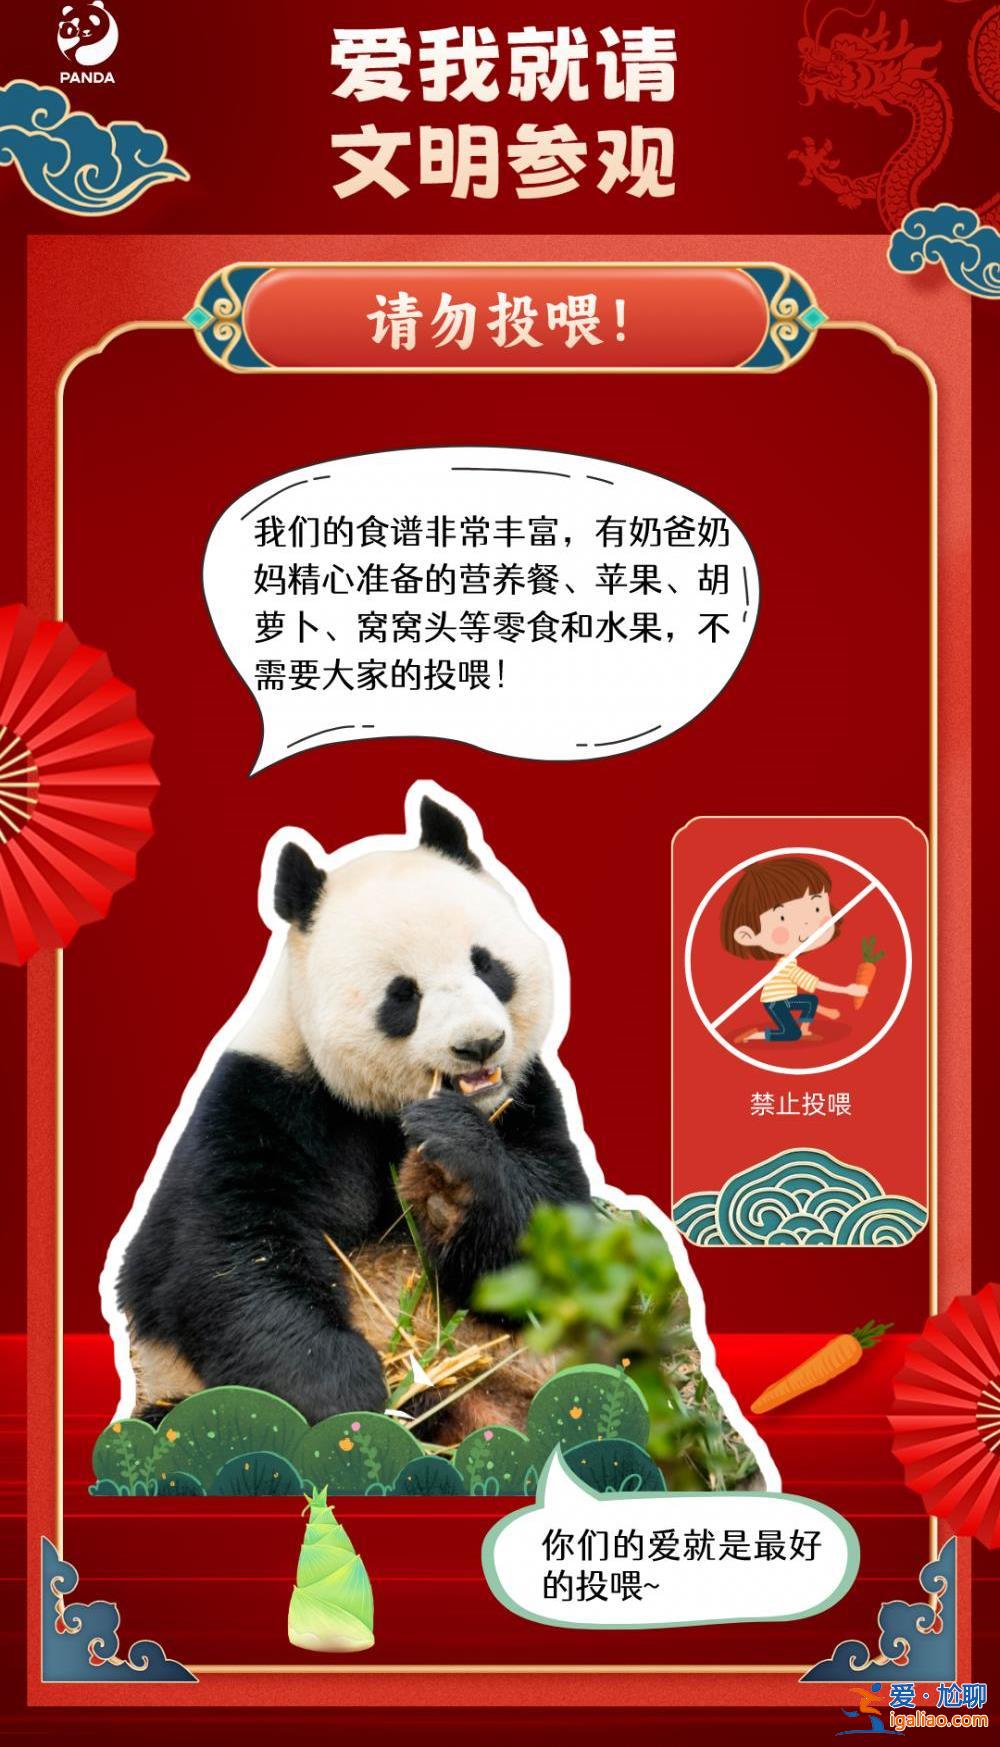 一游客在成都大熊猫基地参观时向场内投掷物品 被终身禁入？